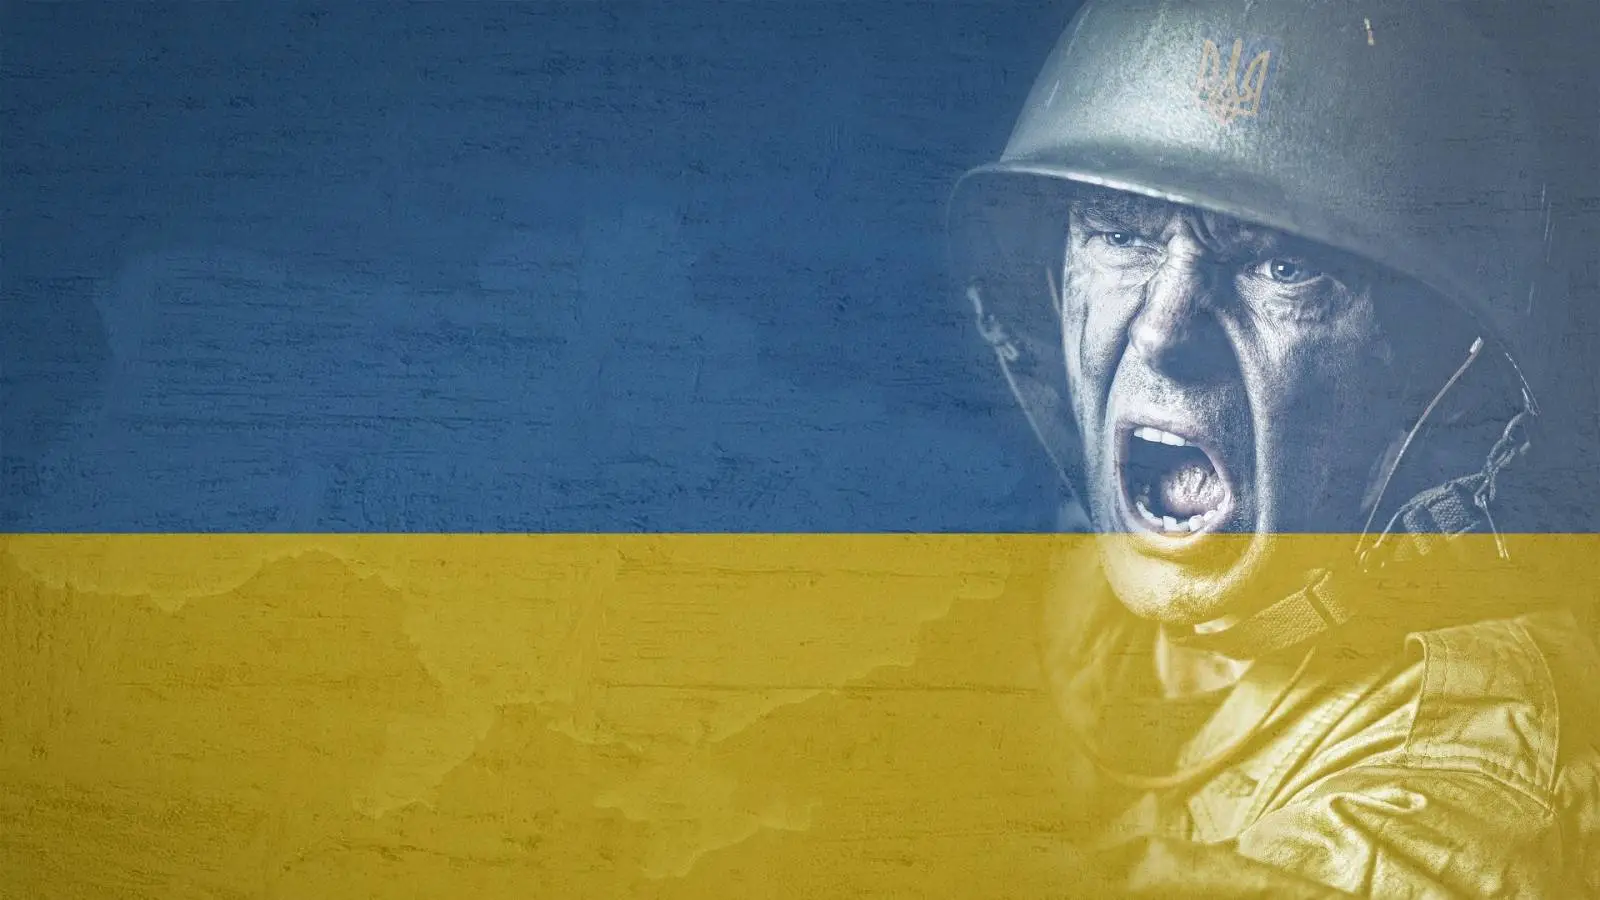 Rusiei I se Cere sa Urgenteze Alipirea Teritoriilor din Donbas, Ucraina